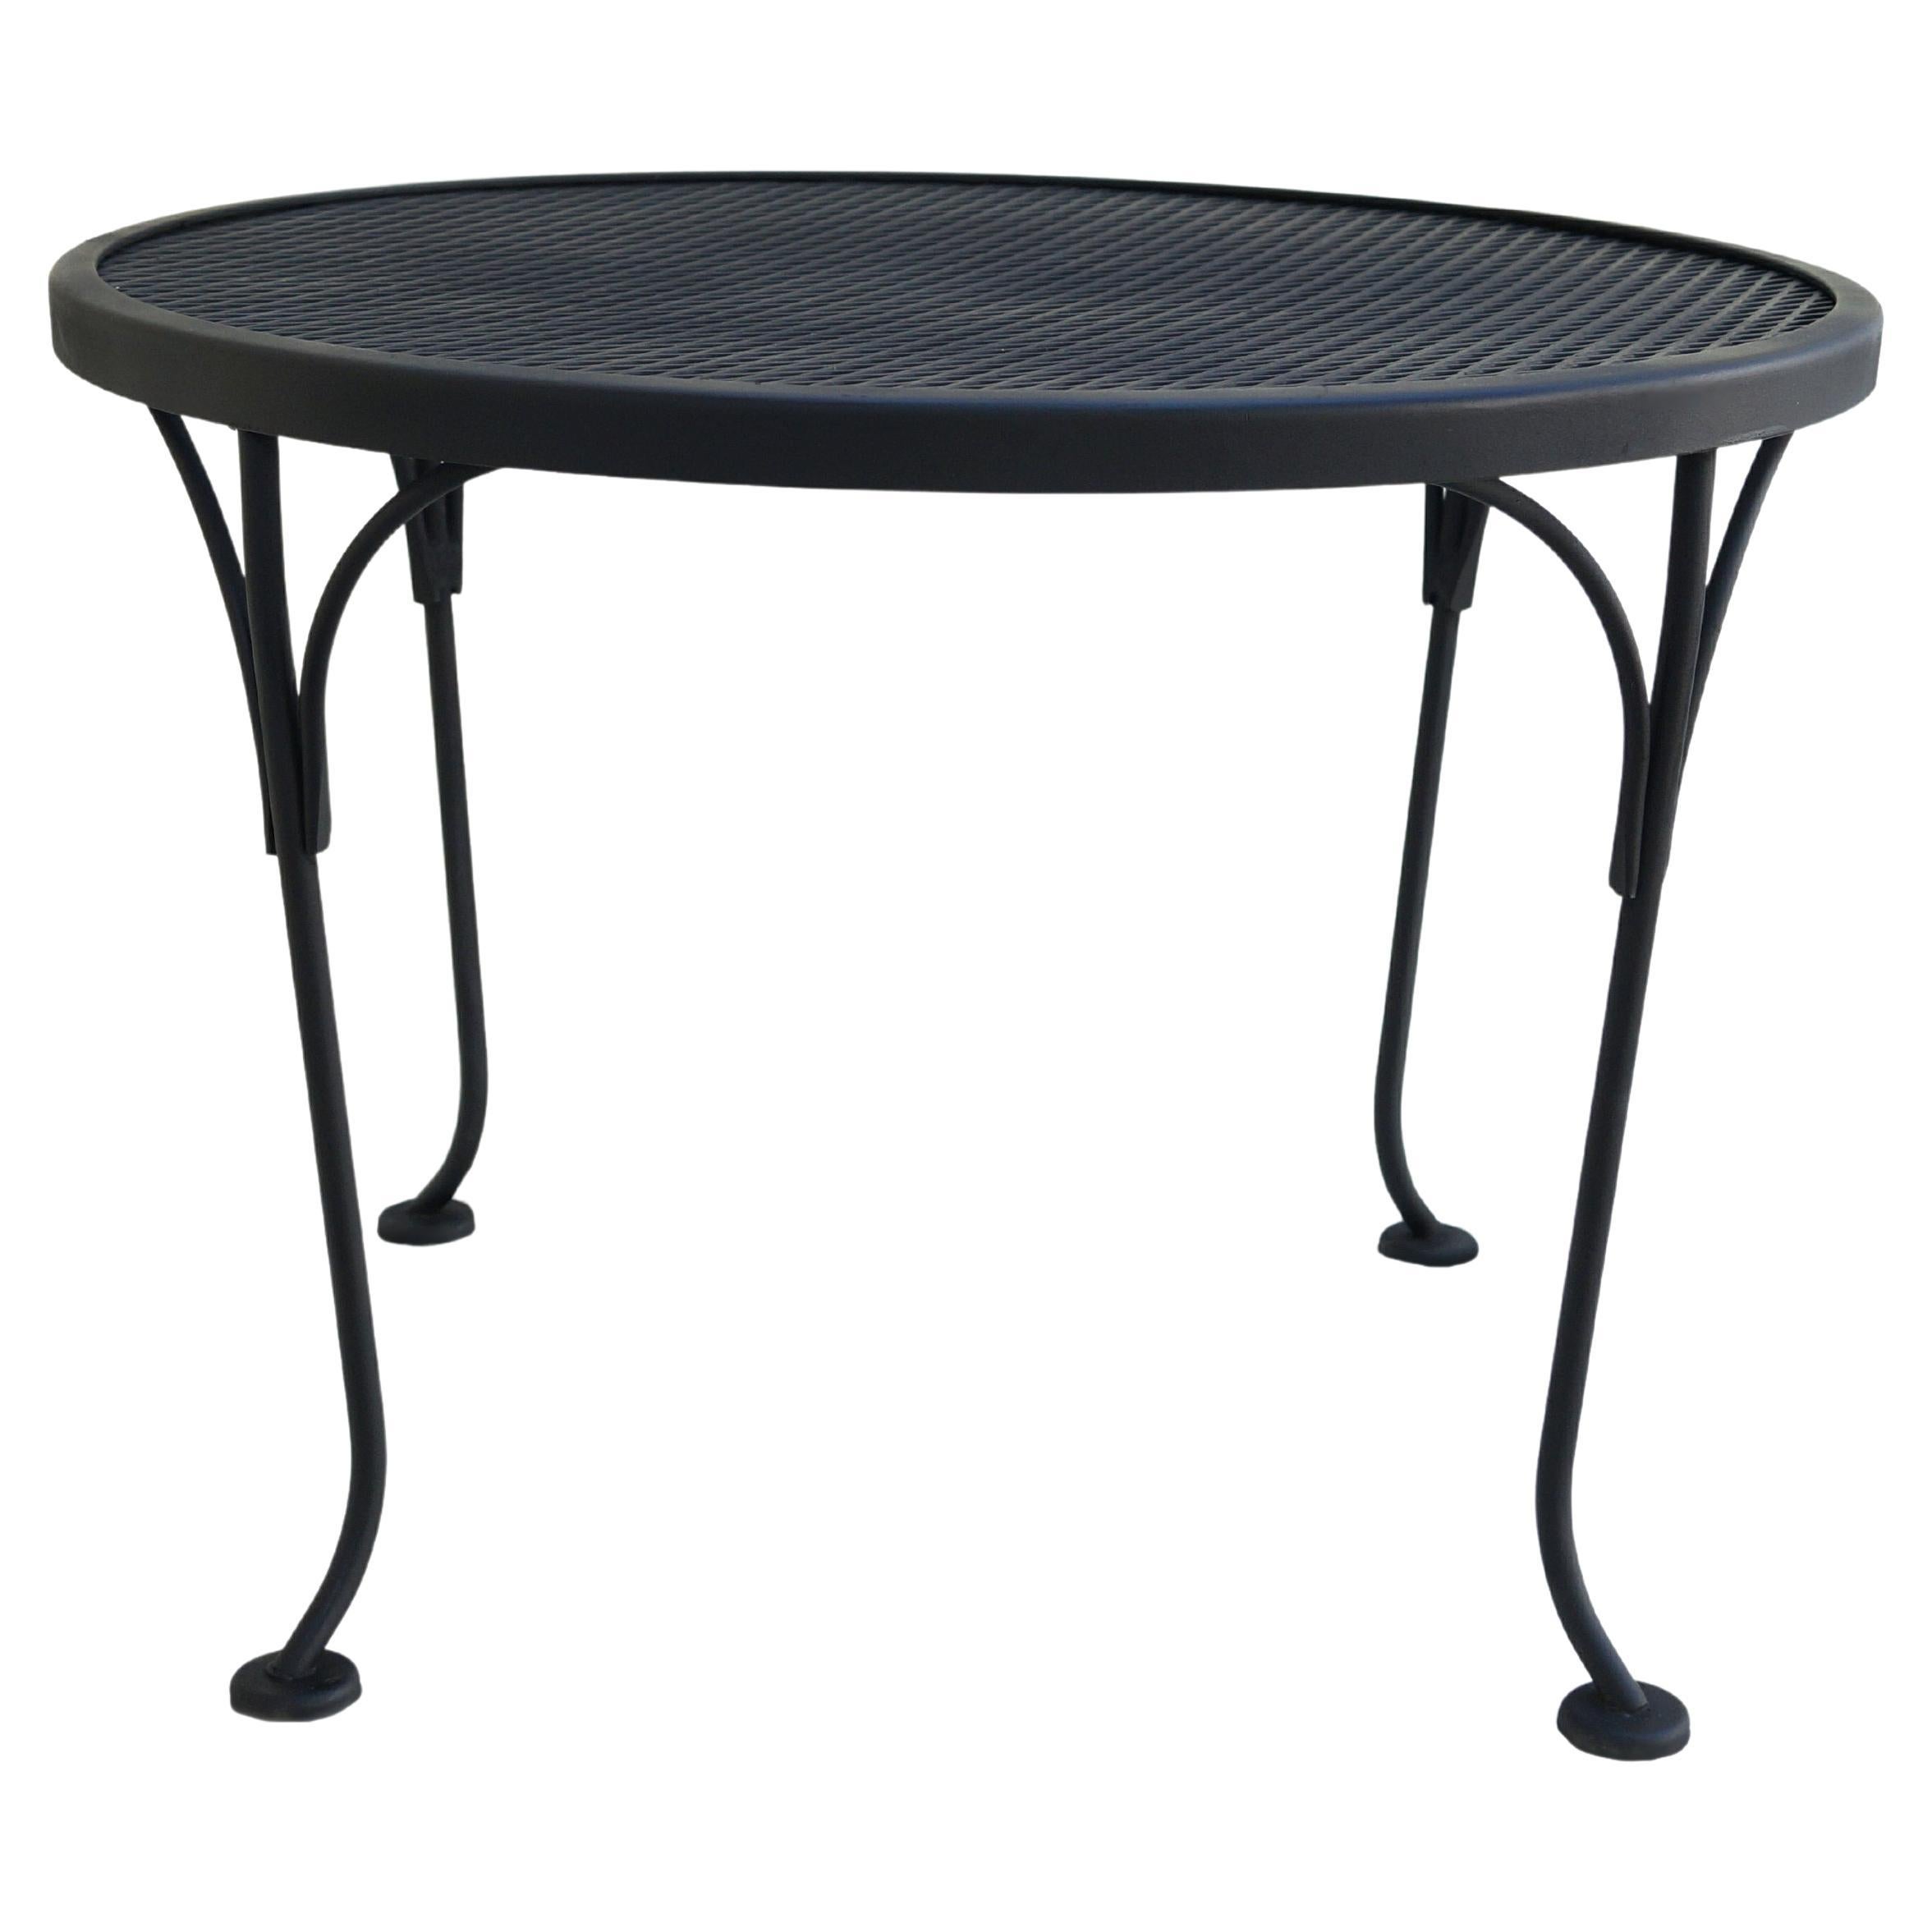 Table basse ou d'appoint ronde en fer forgé noir pour patio ou d'appoint Russell Woodard Furniture